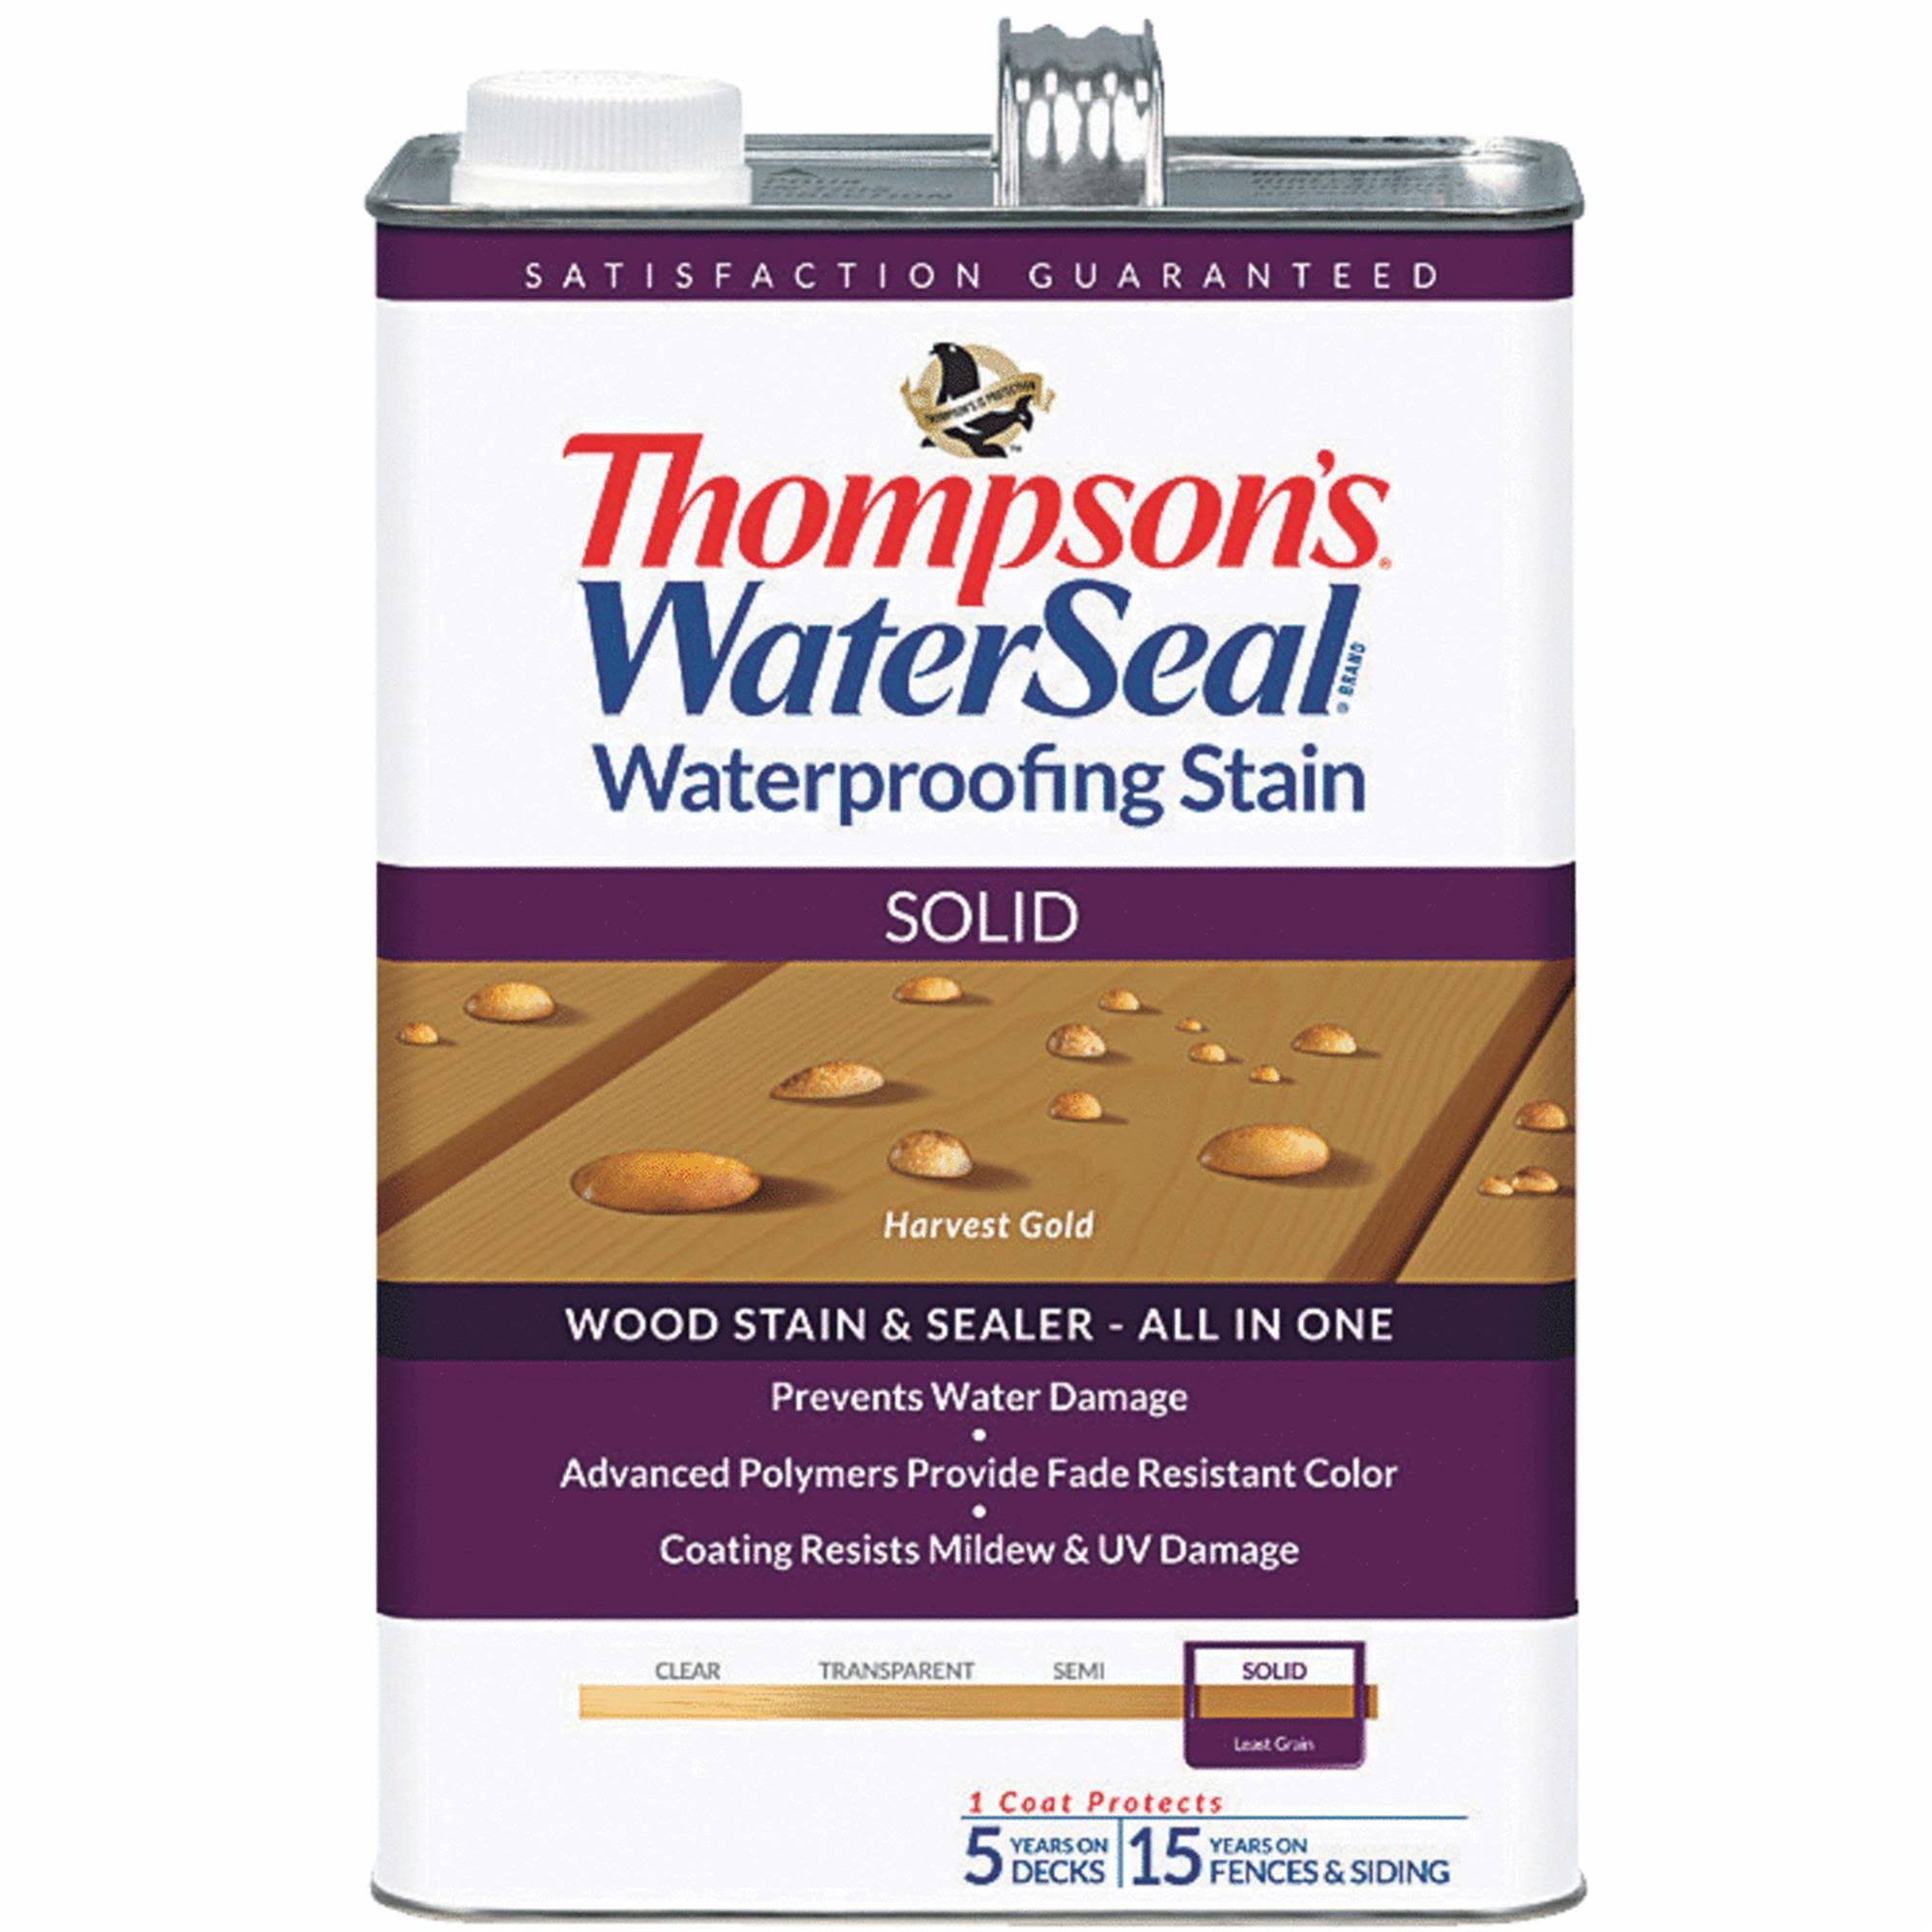 Thompsons WaterSeal Waterproofing Stain - Solid, 1gal